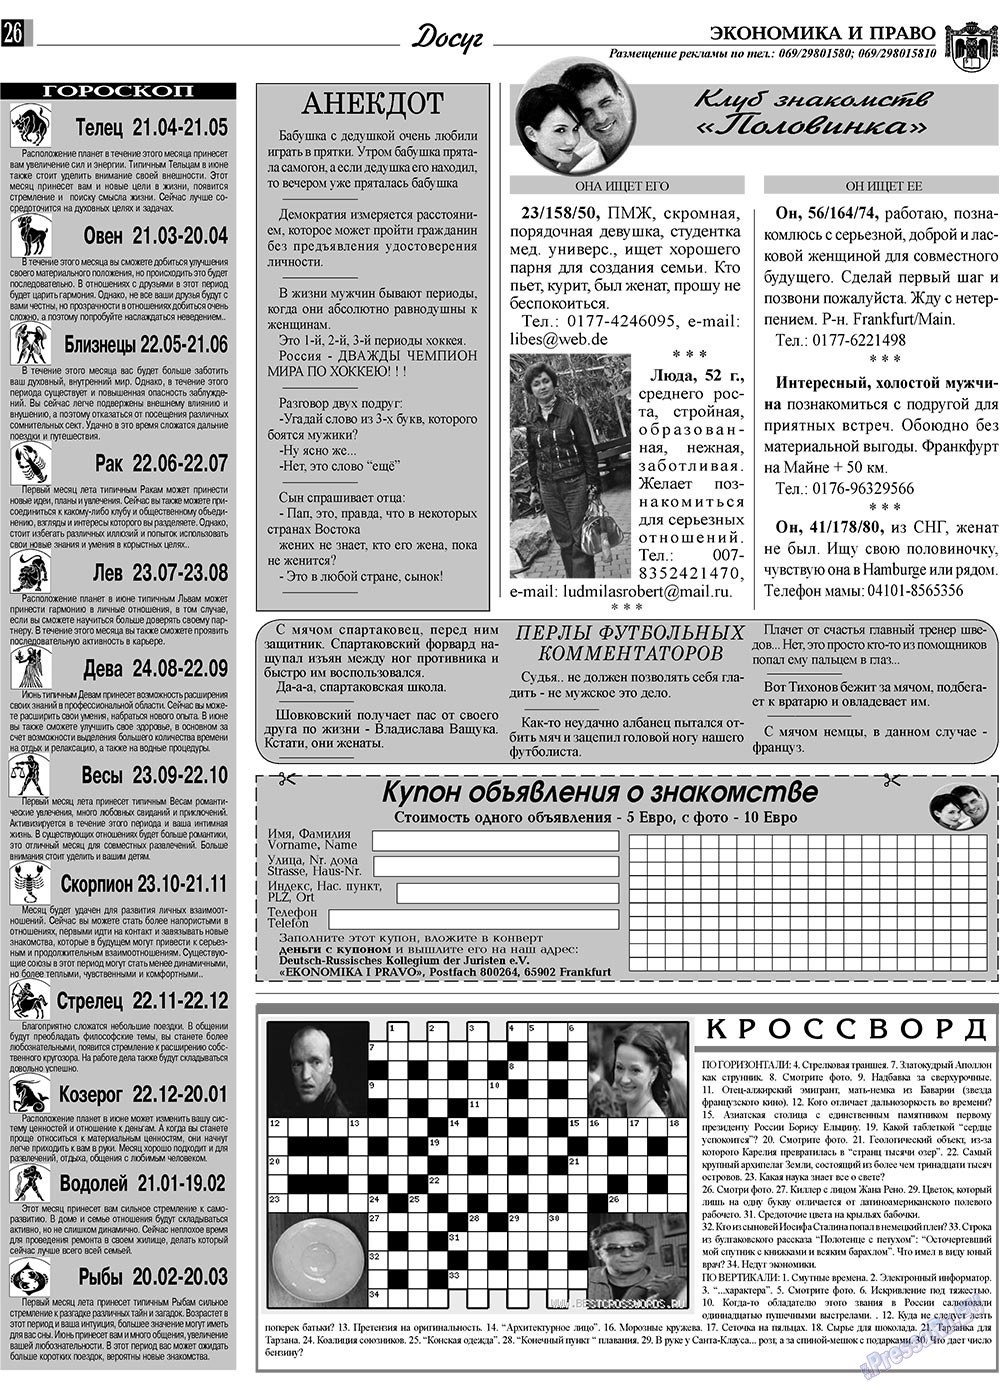 Экономика и право, газета. 2009 №6 стр.26